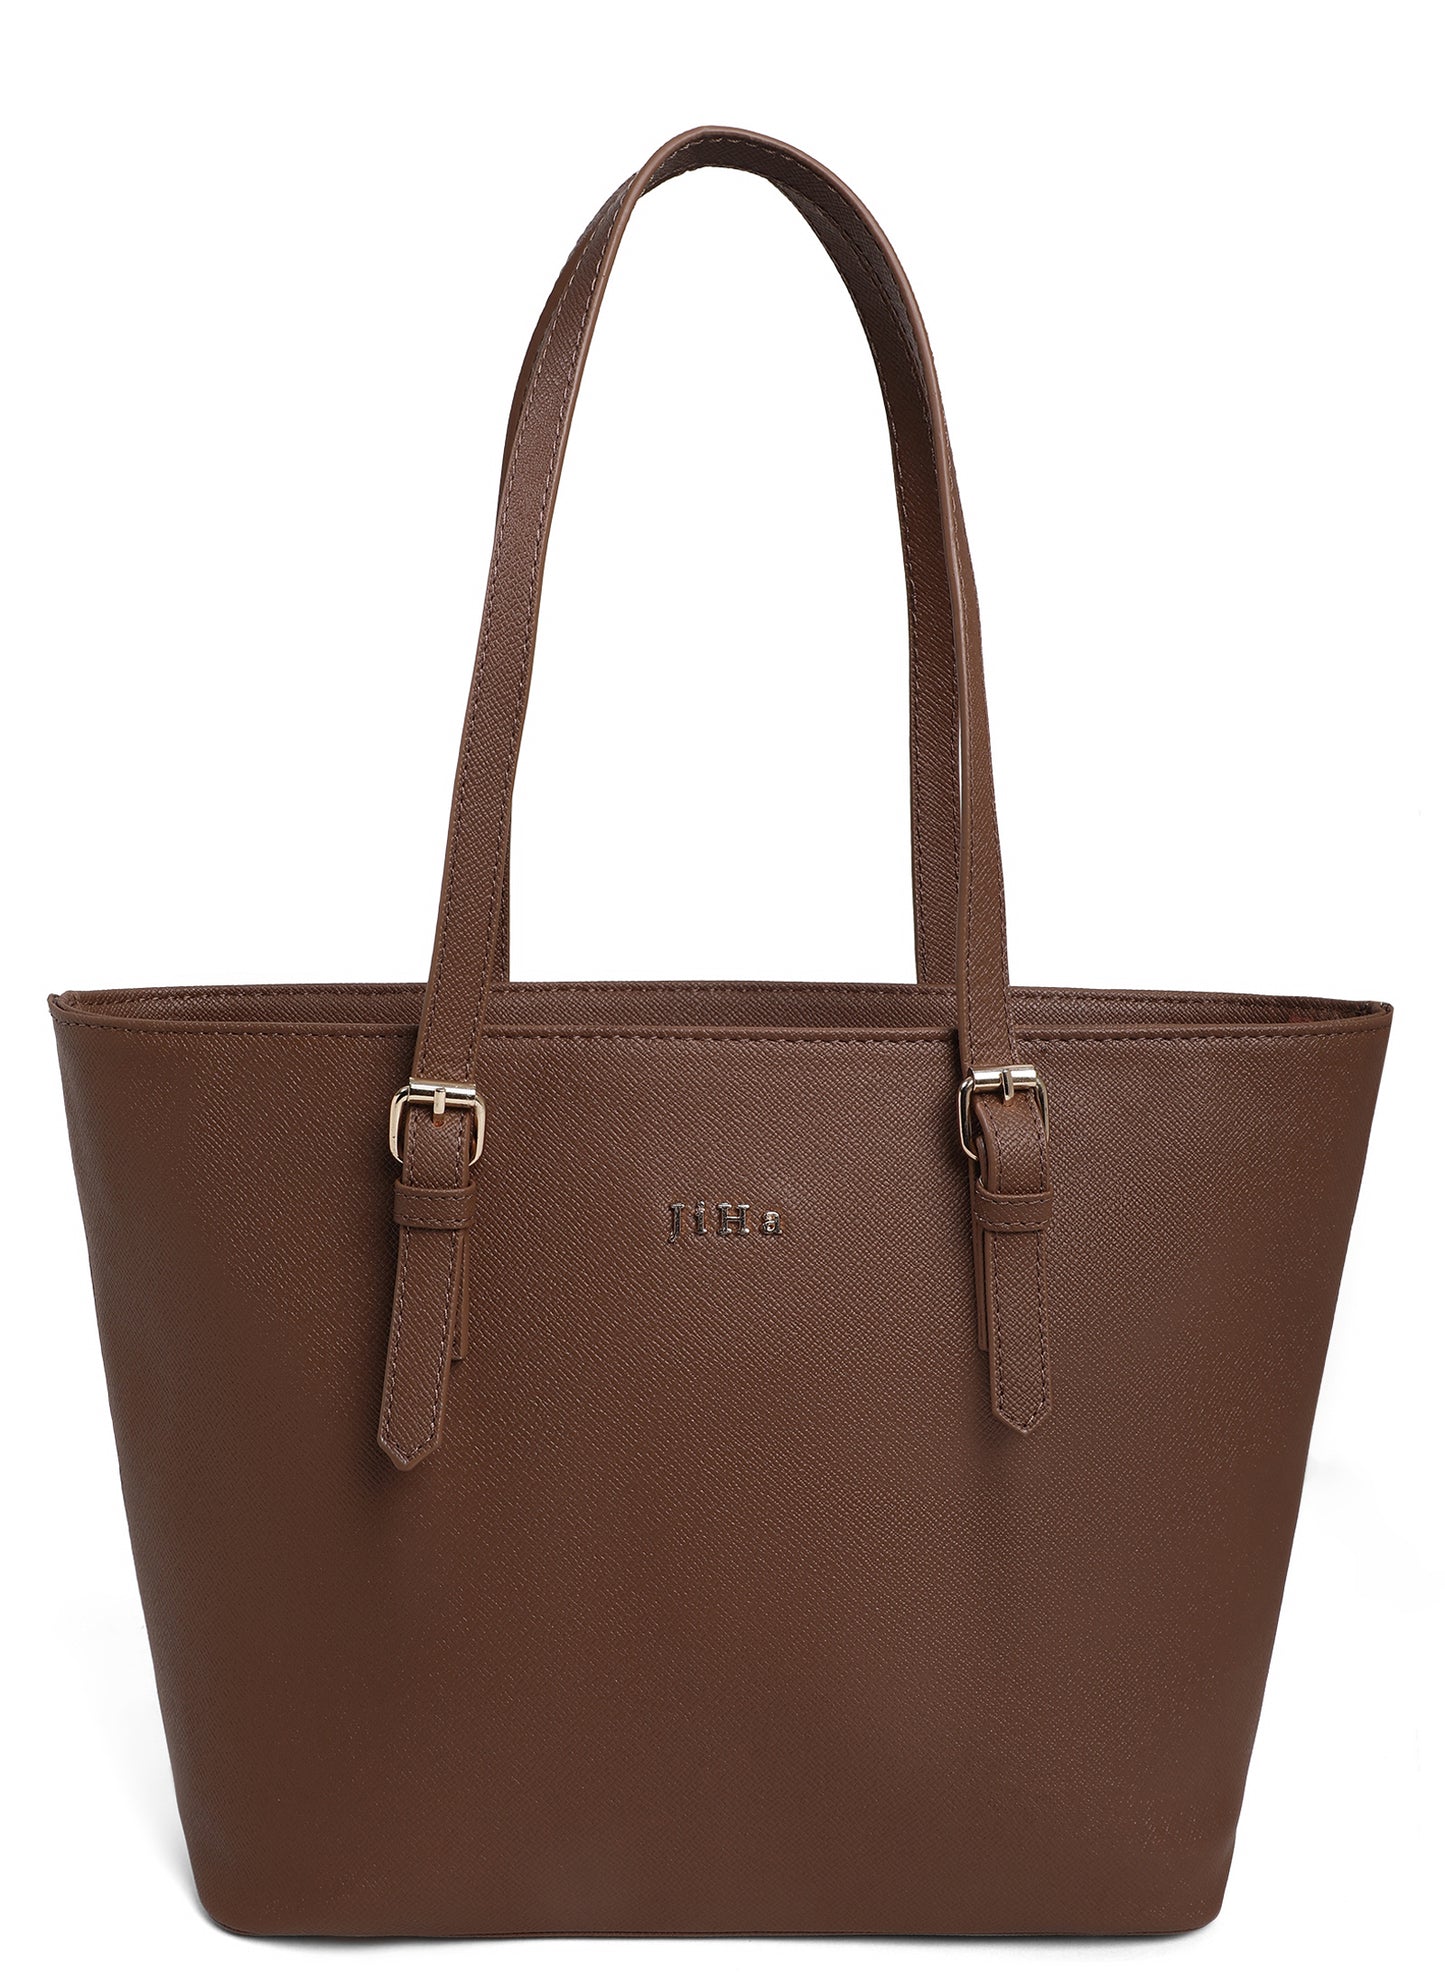 Jiha Premium Brown Tote Bag Shoulder Bag